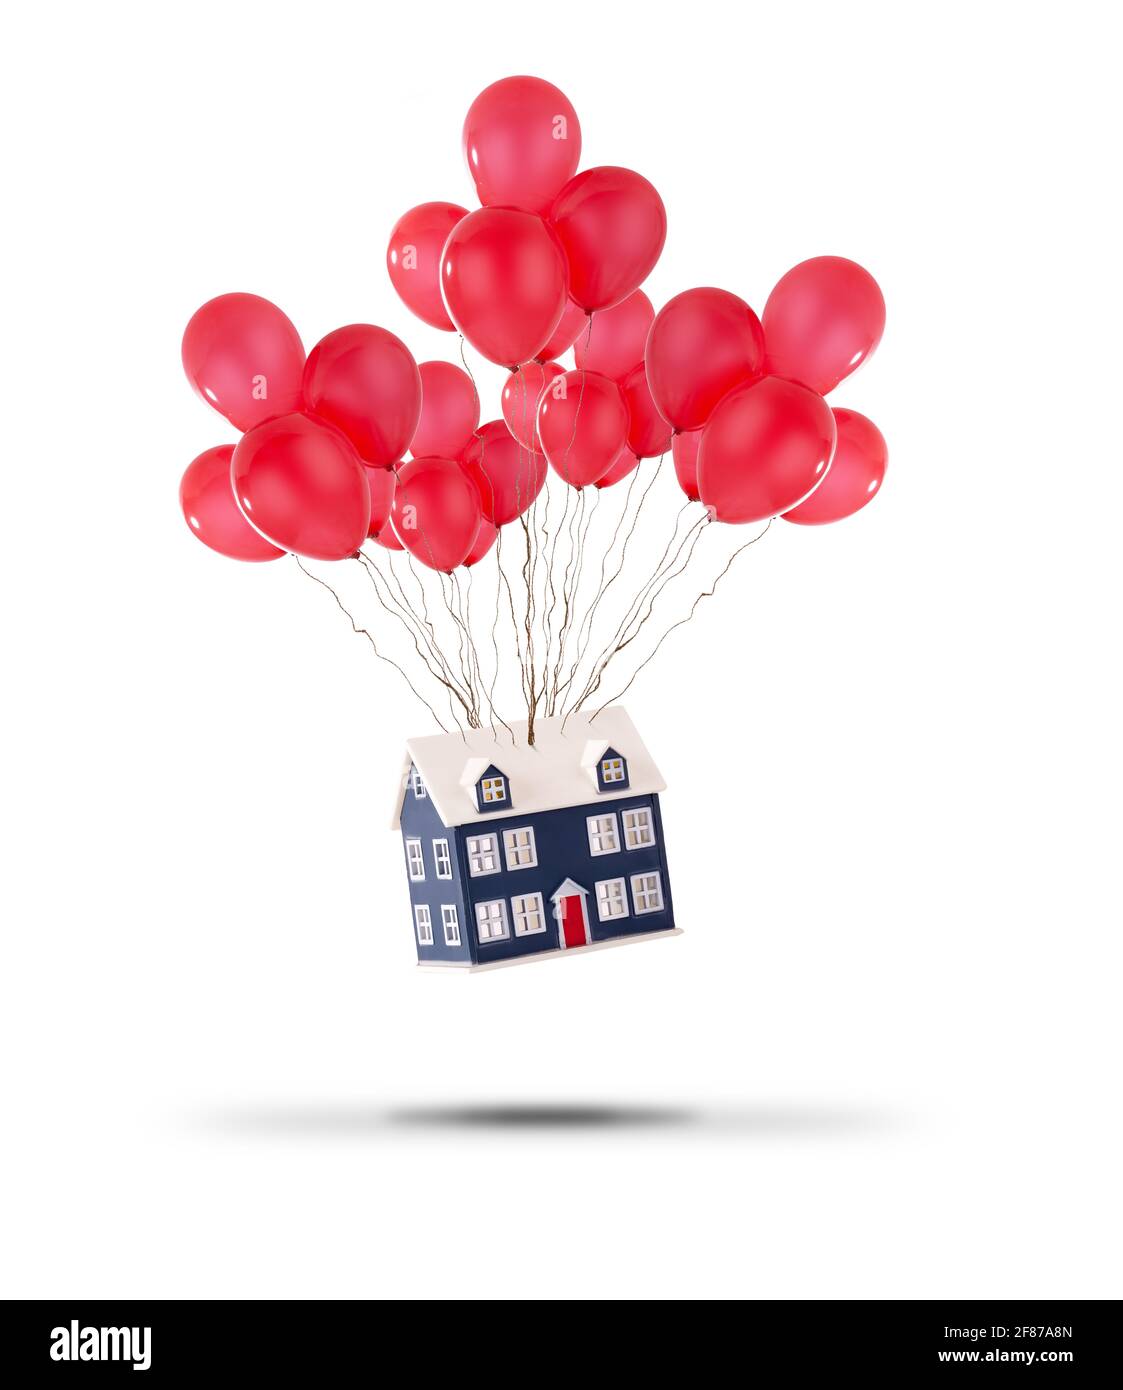 Casa giocattolo sollevata con palloncini rossi isolati su uno sfondo bianco. I prezzi delle case aumentano e il concetto di casa in movimento Foto Stock